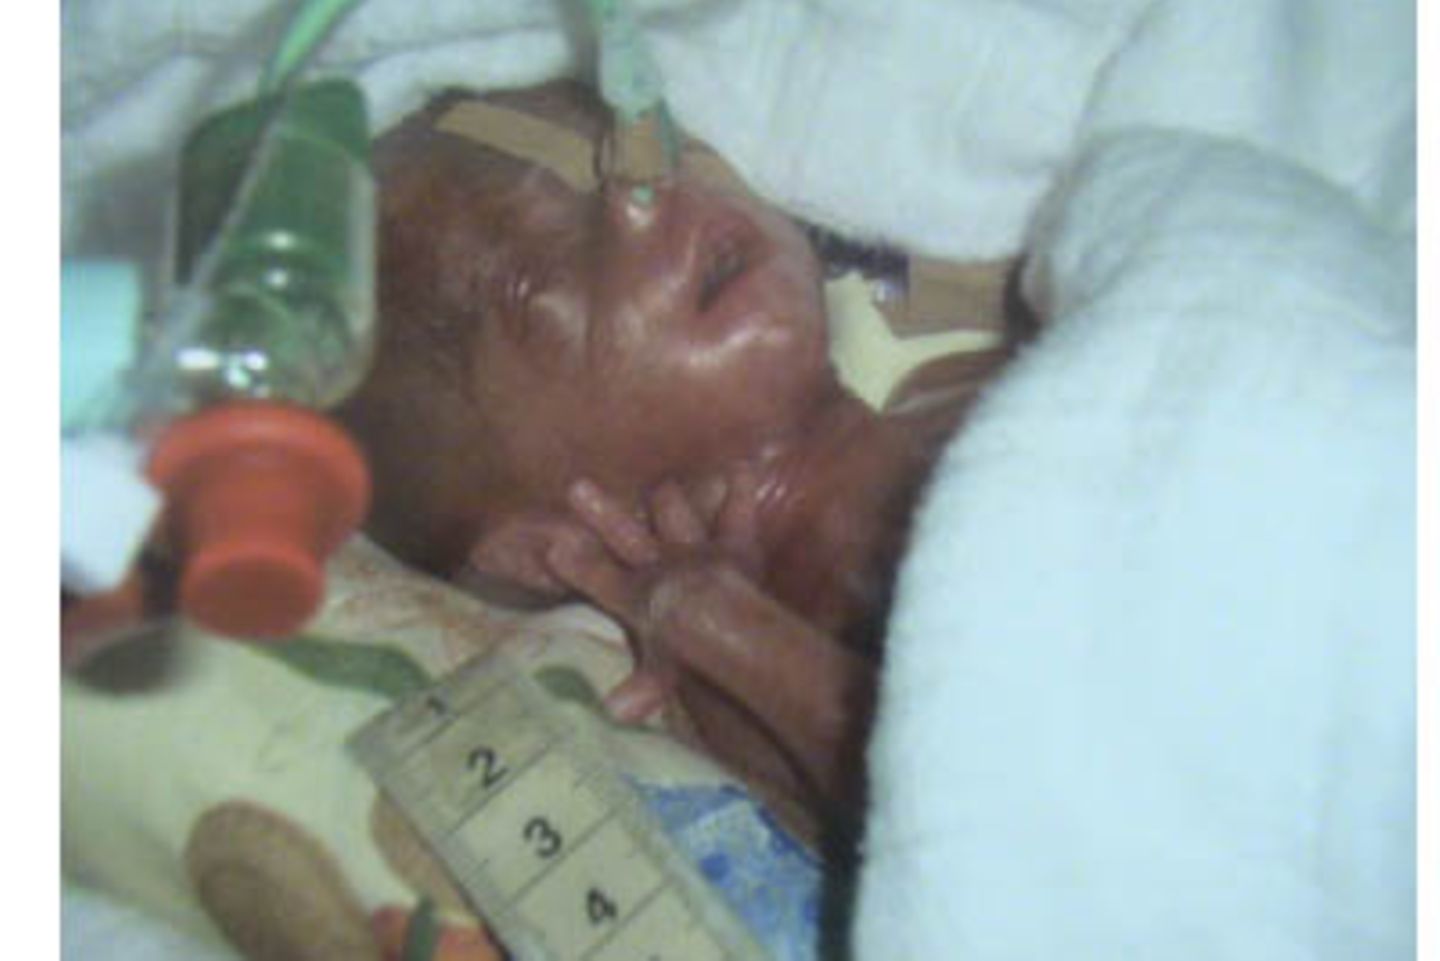 Unser kleines Wunder - 16 Wochen zu früh geboren